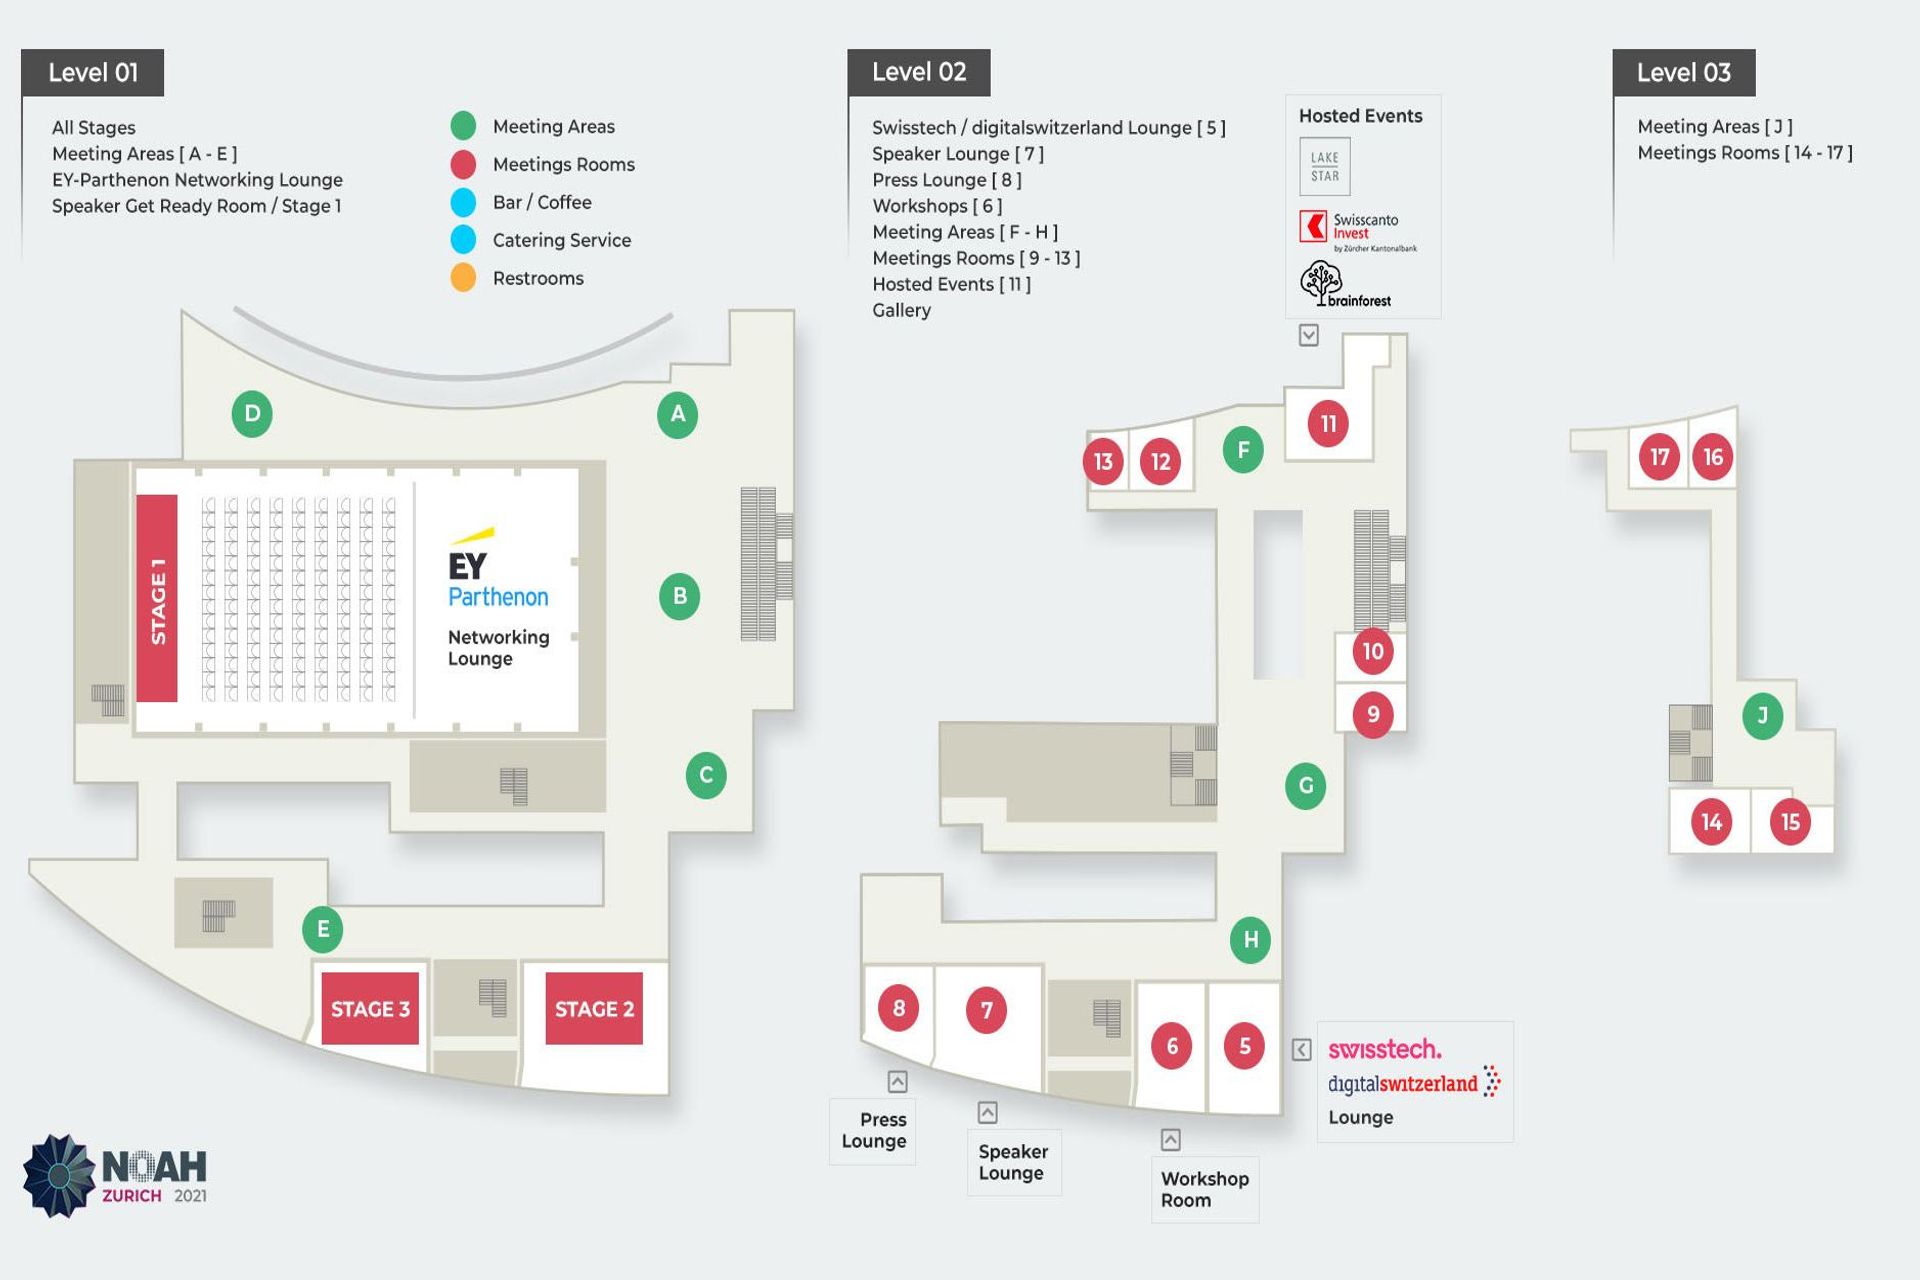 La mappa degli eventi e delle location della "NOAH Conference 2021" a Zurigo del 6 e 7 dicembre